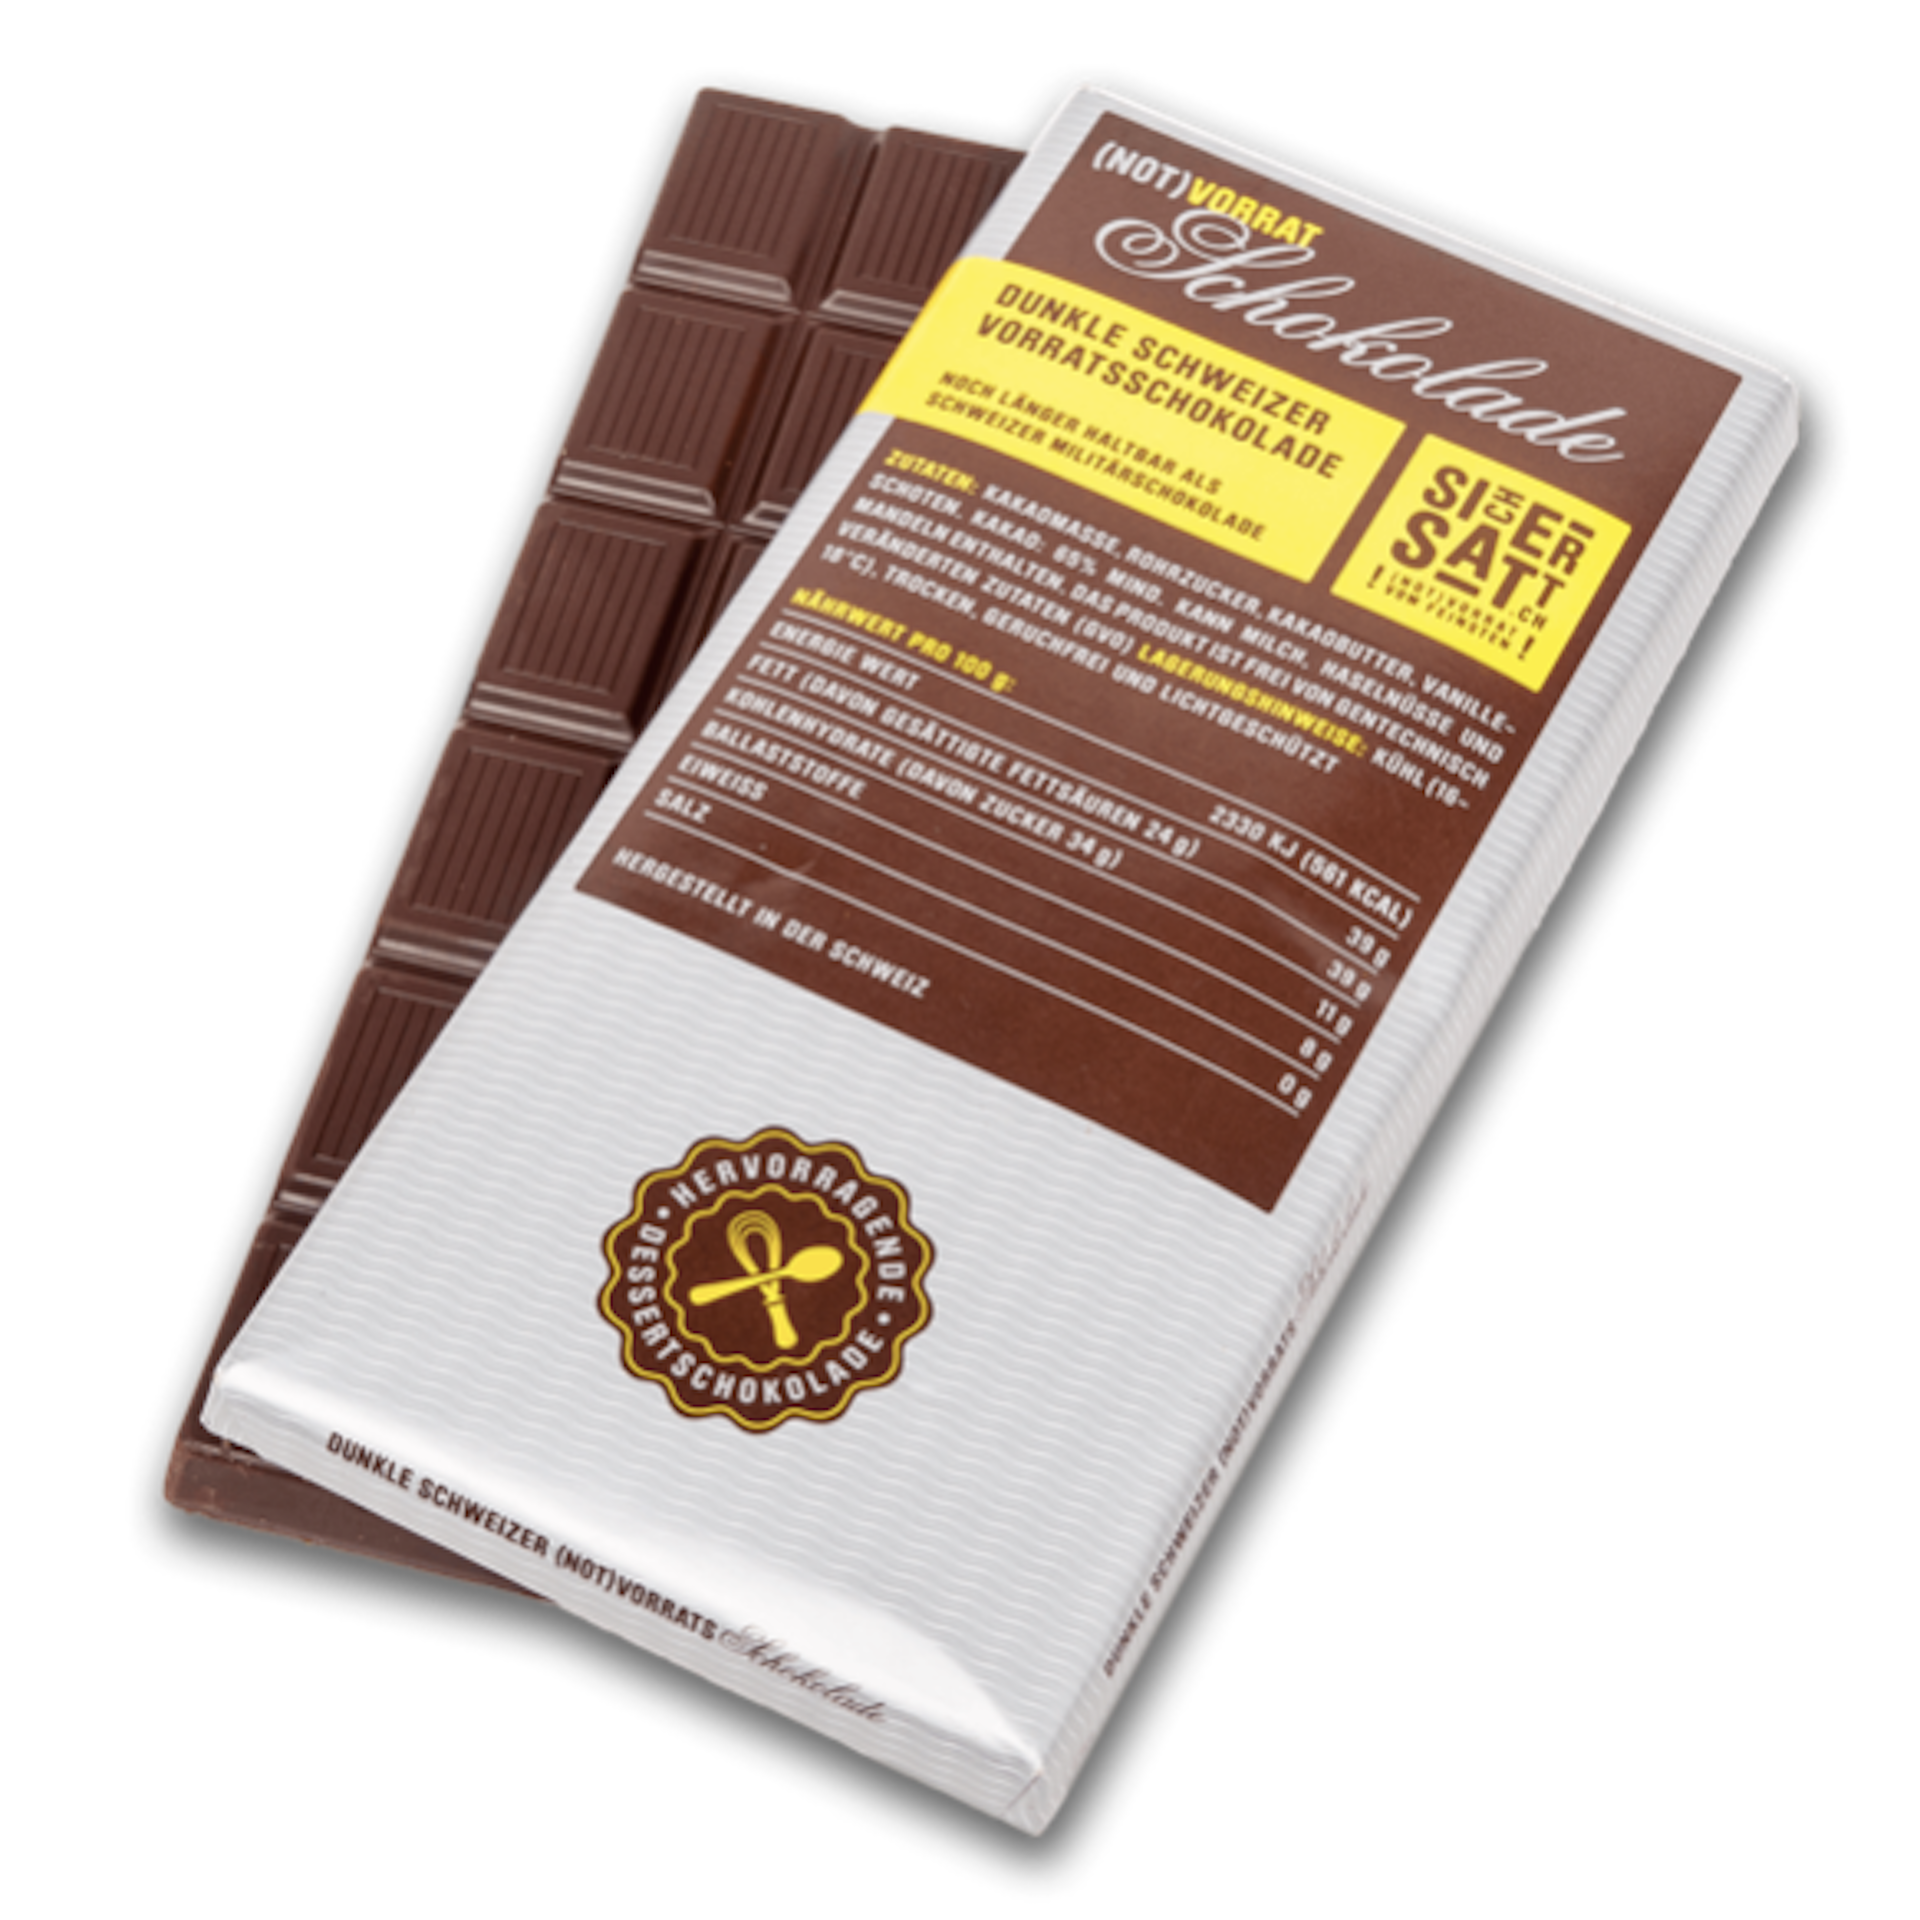 SicherSatt Schweizer Schokolade (100g)